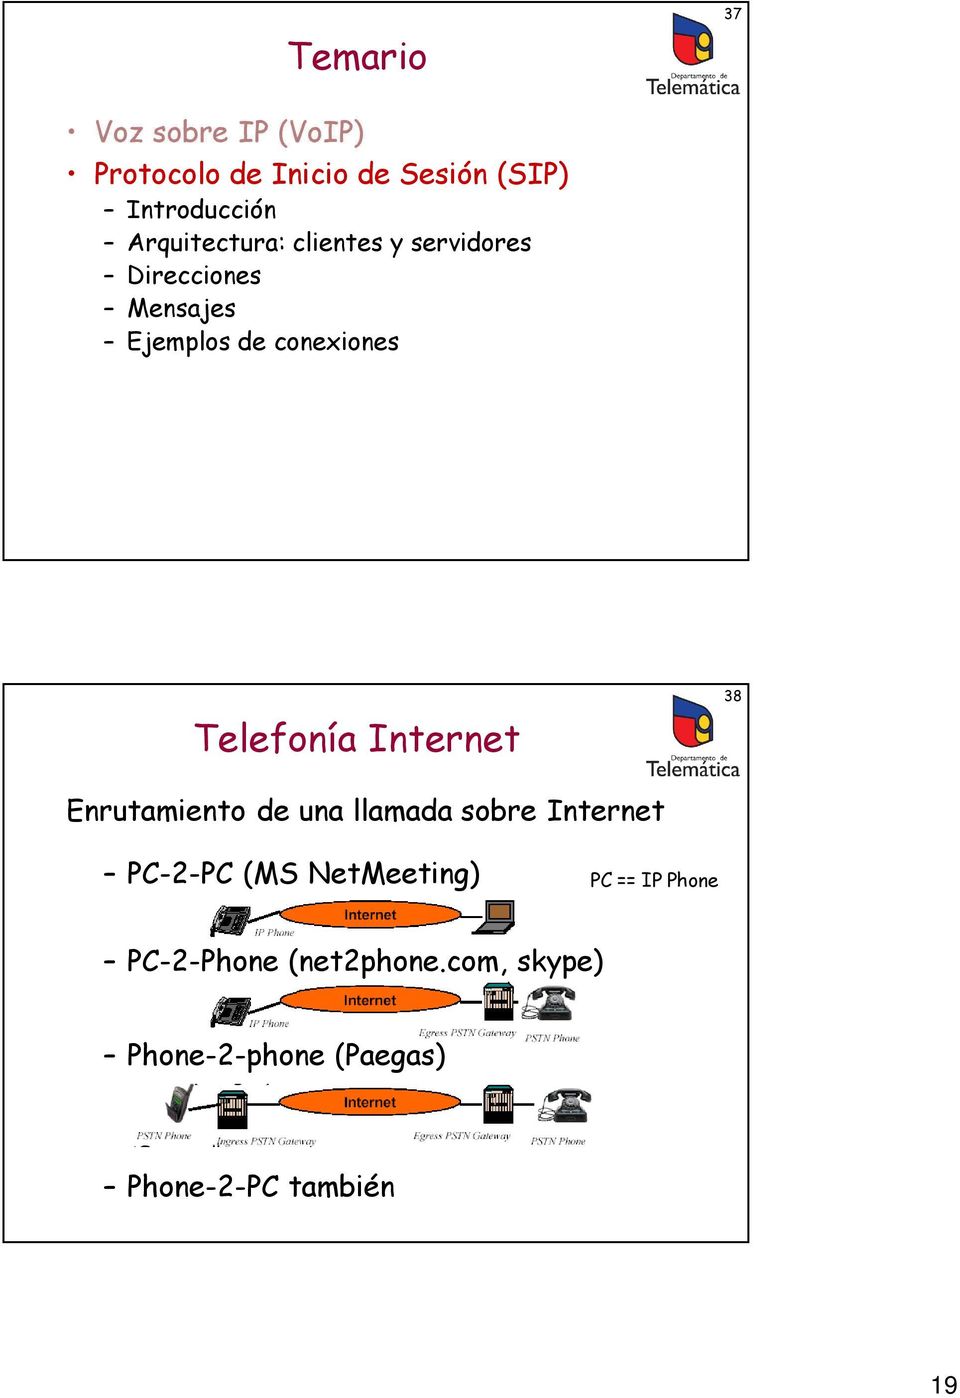 Telefonía Internet Enrutamiento de una llamada sobre Internet 38 PC-2-PC (MS